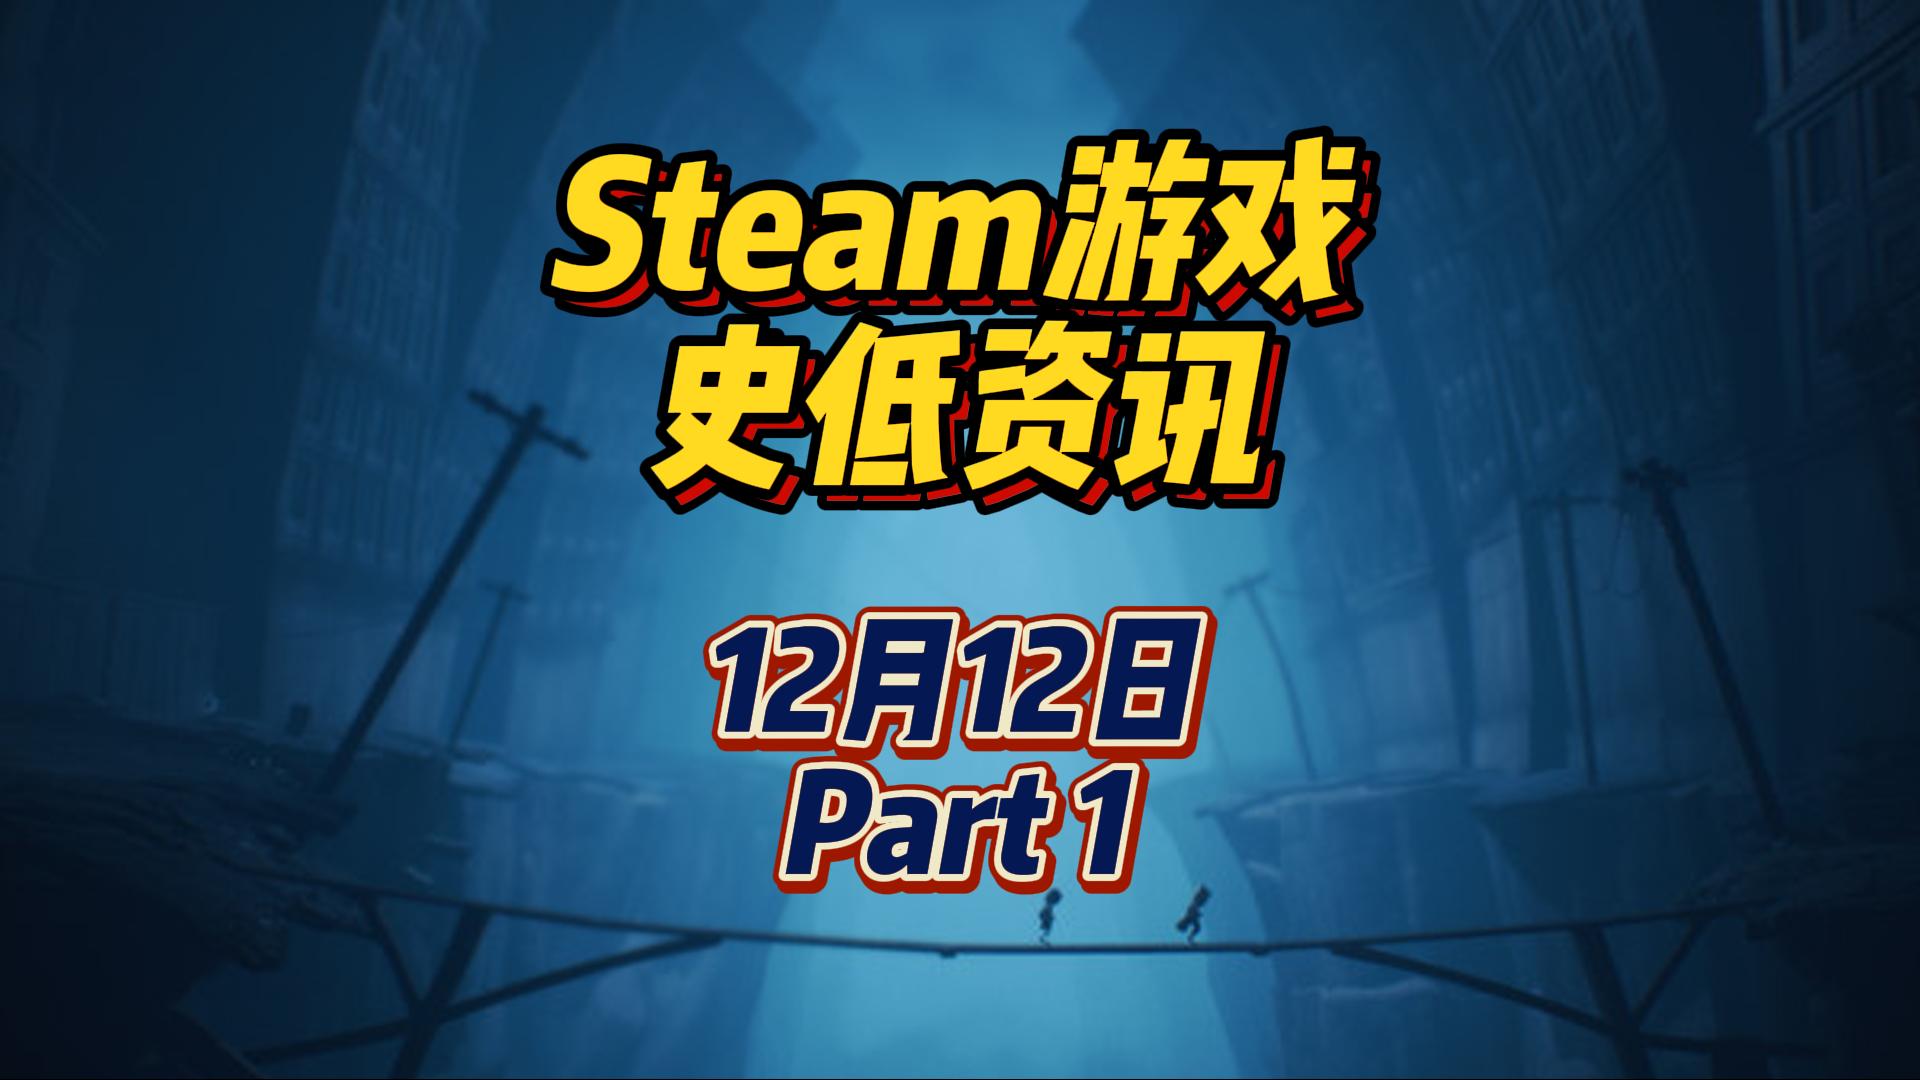 小小梦魇 2 平史低，纸人系列平史低，12 月 12 日 Steam 史低游戏